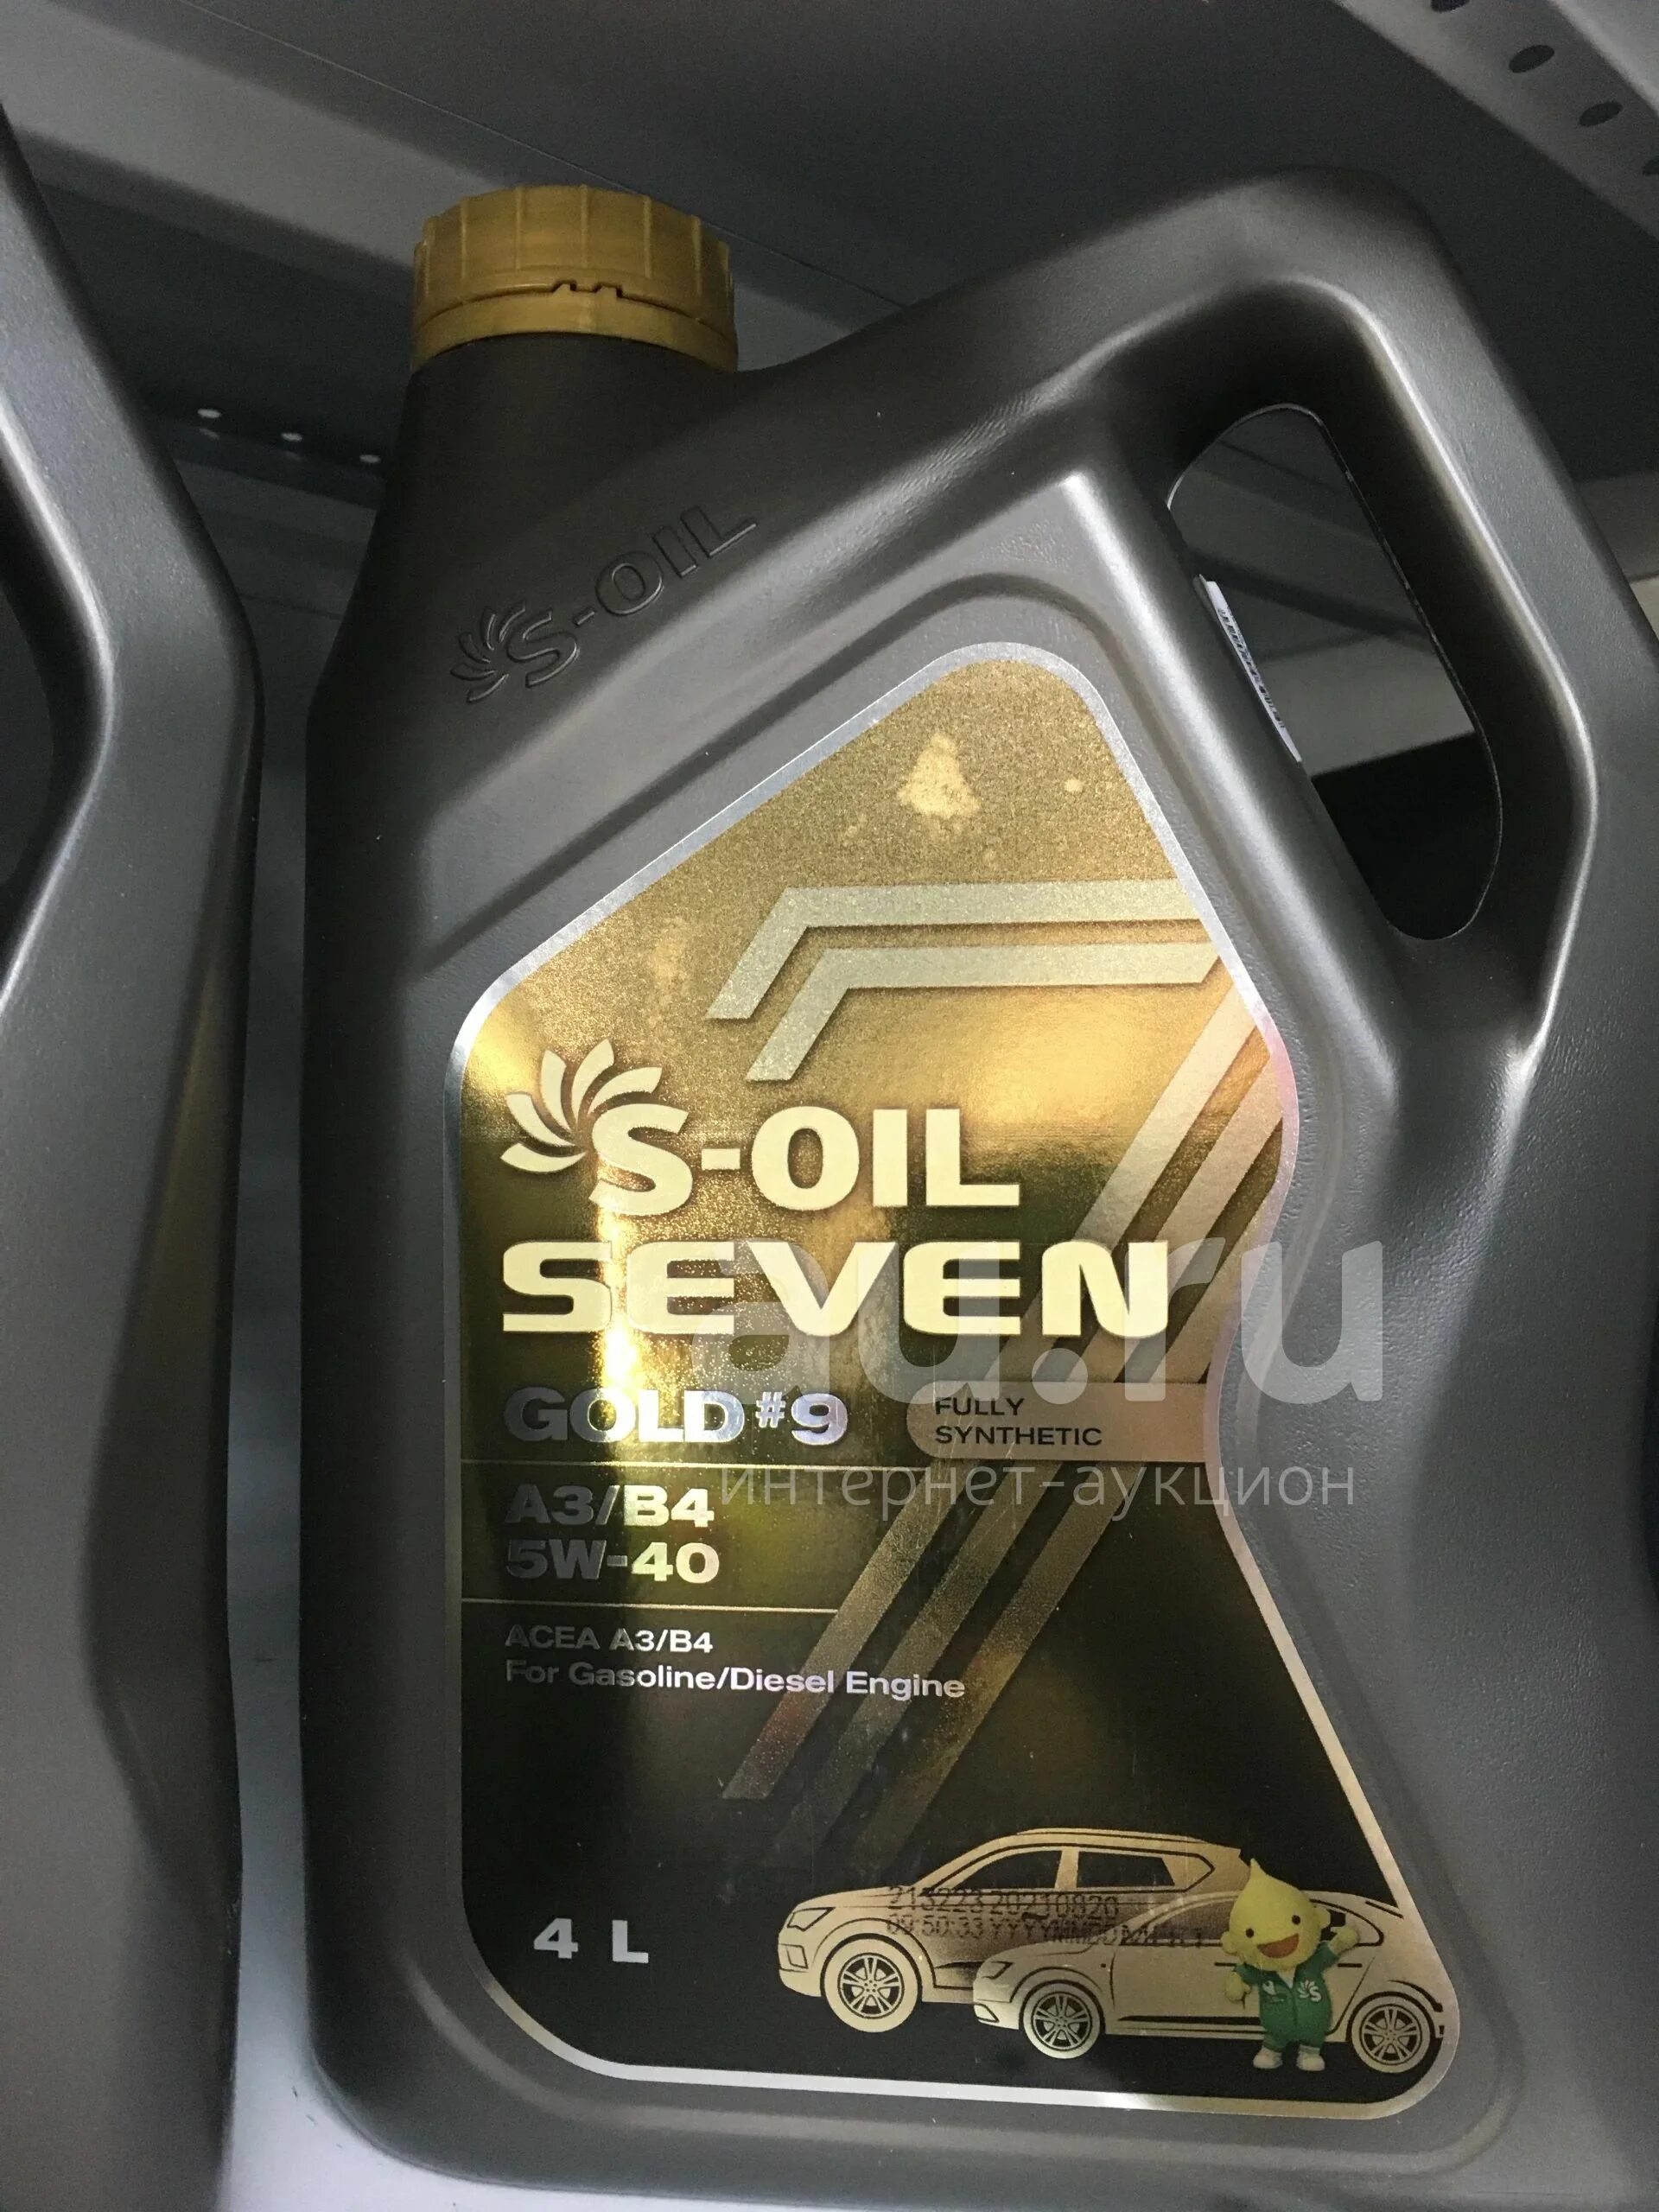 S-Oil Seven Gold #9 5w-30 a5/b5. S-Oil 7 Gold #9 a3/b4 5w40. S-Oil 7 Gold #9 c5 0w20. S-Oil Seven gold9 a3/b4 SN 10w40 синтетика (20л.). Масло 5w40 502 505